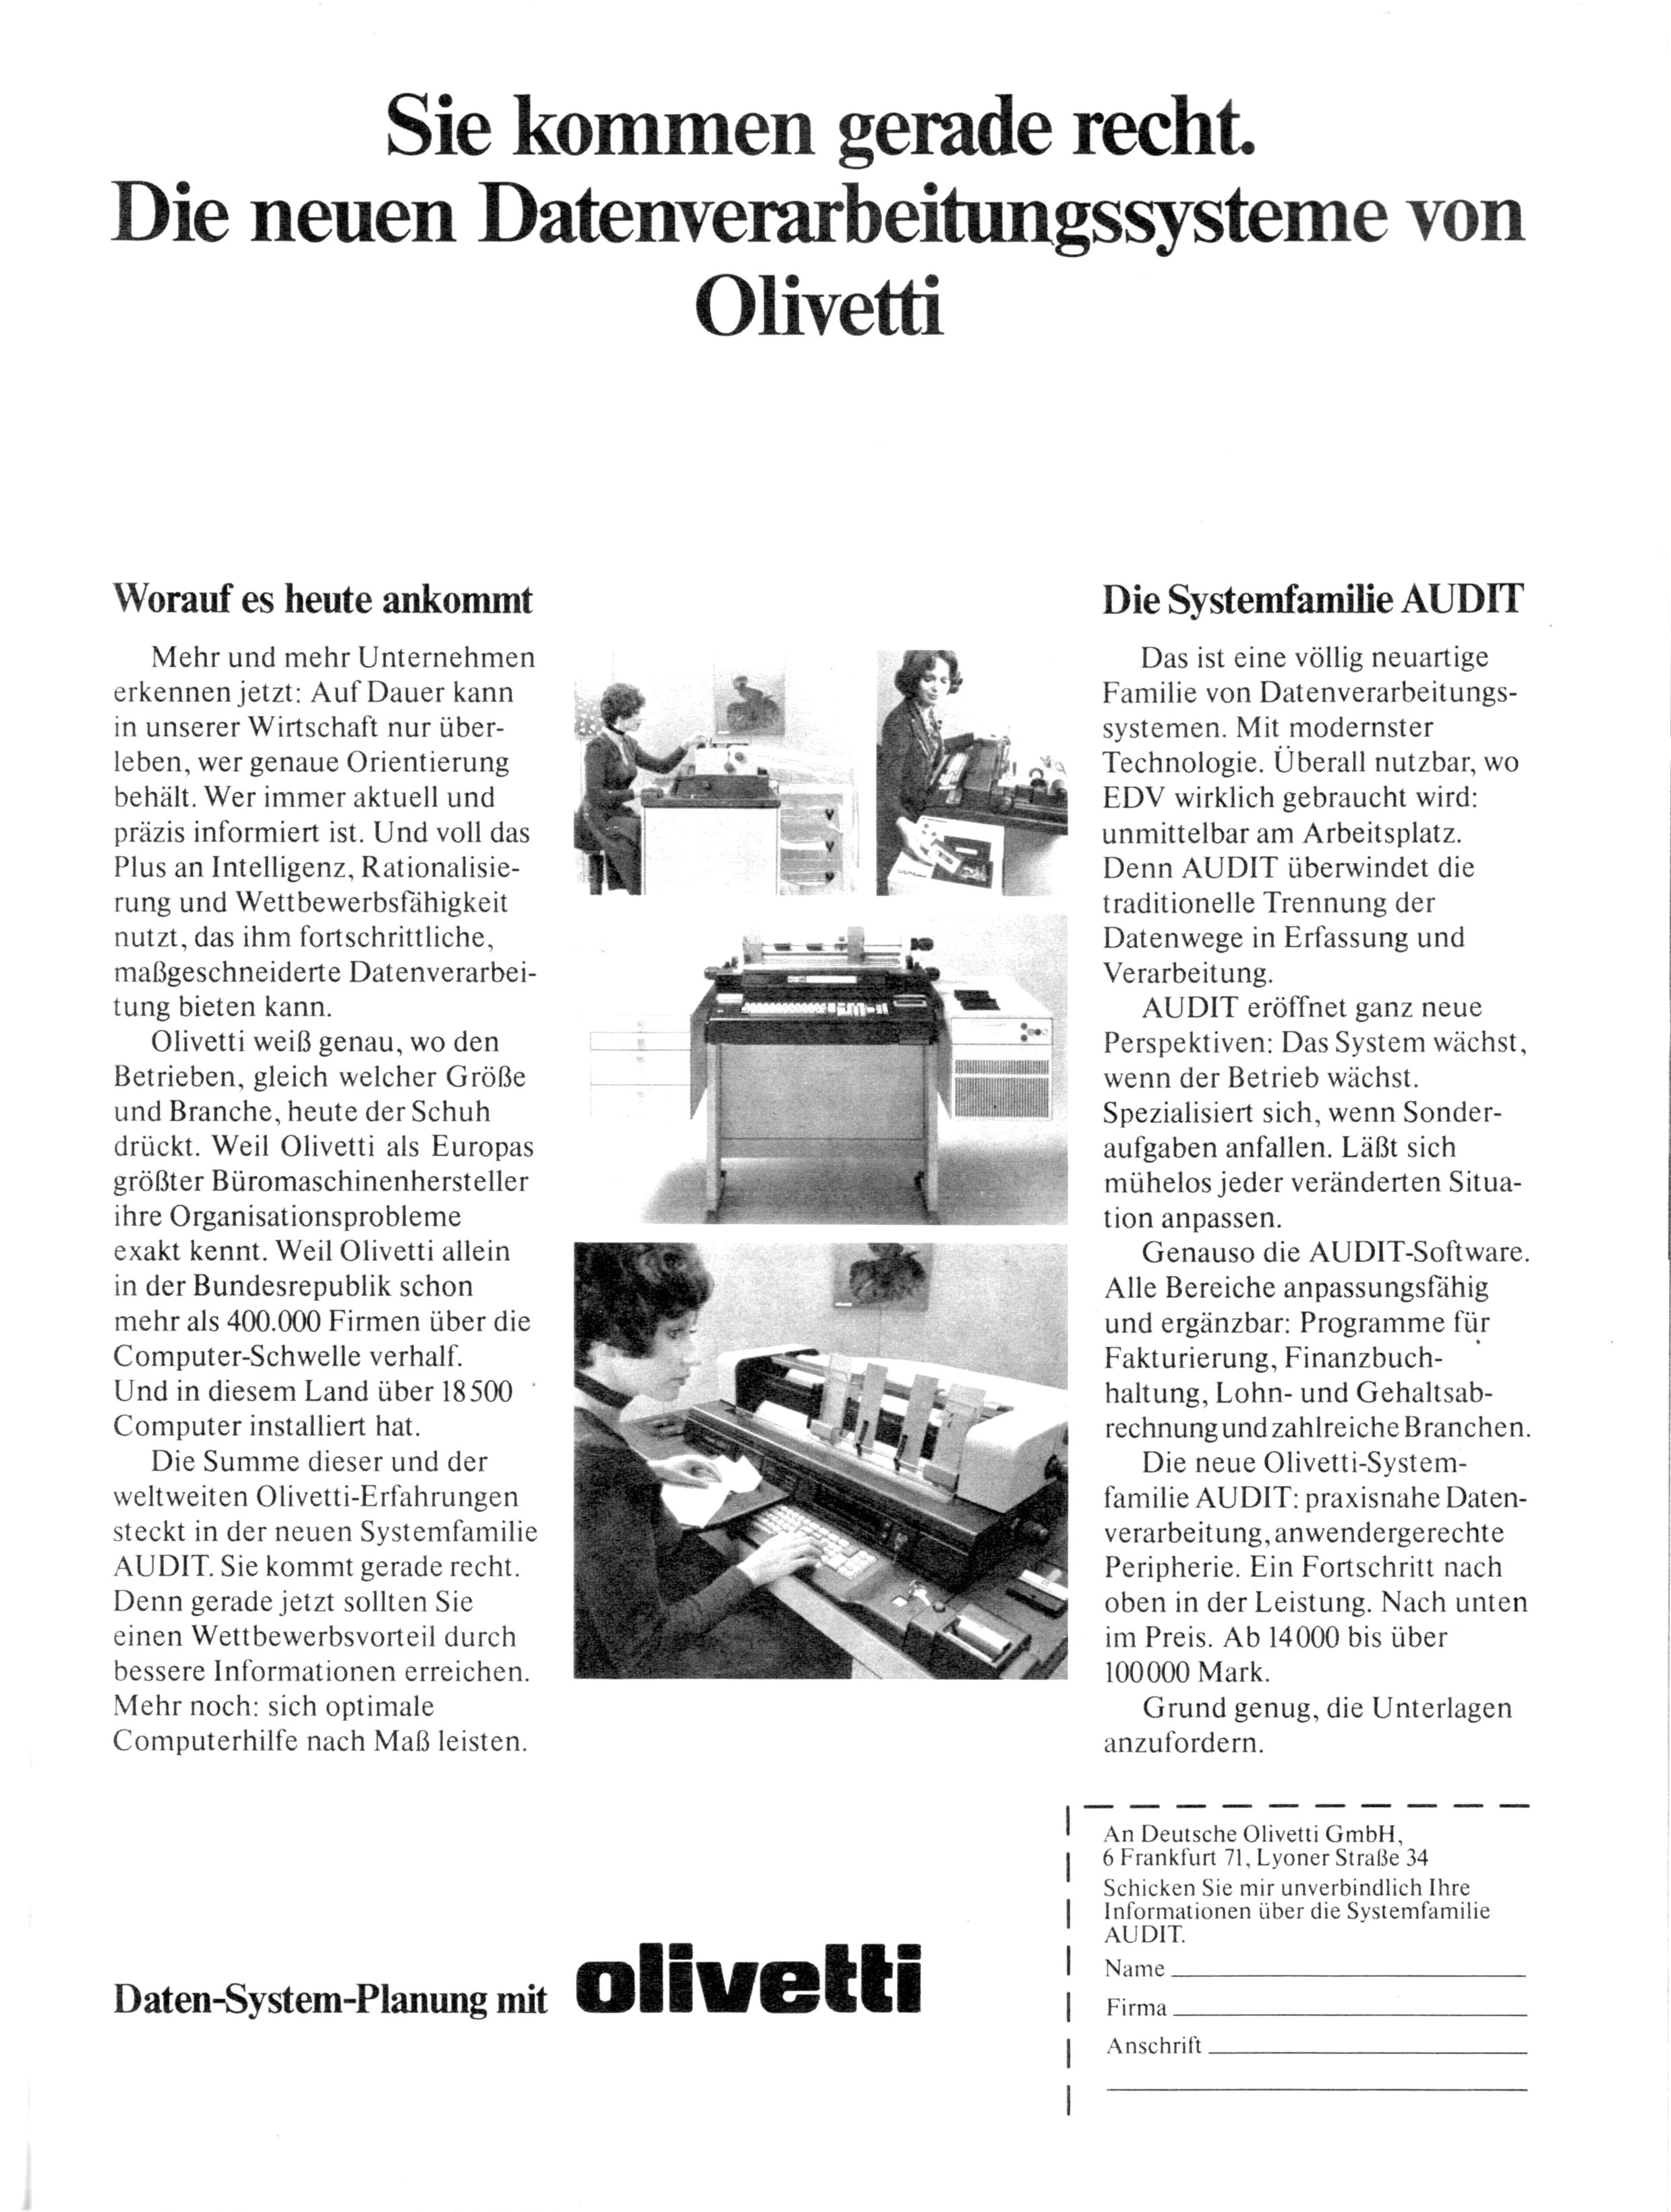 Olivetti 1975.jpg